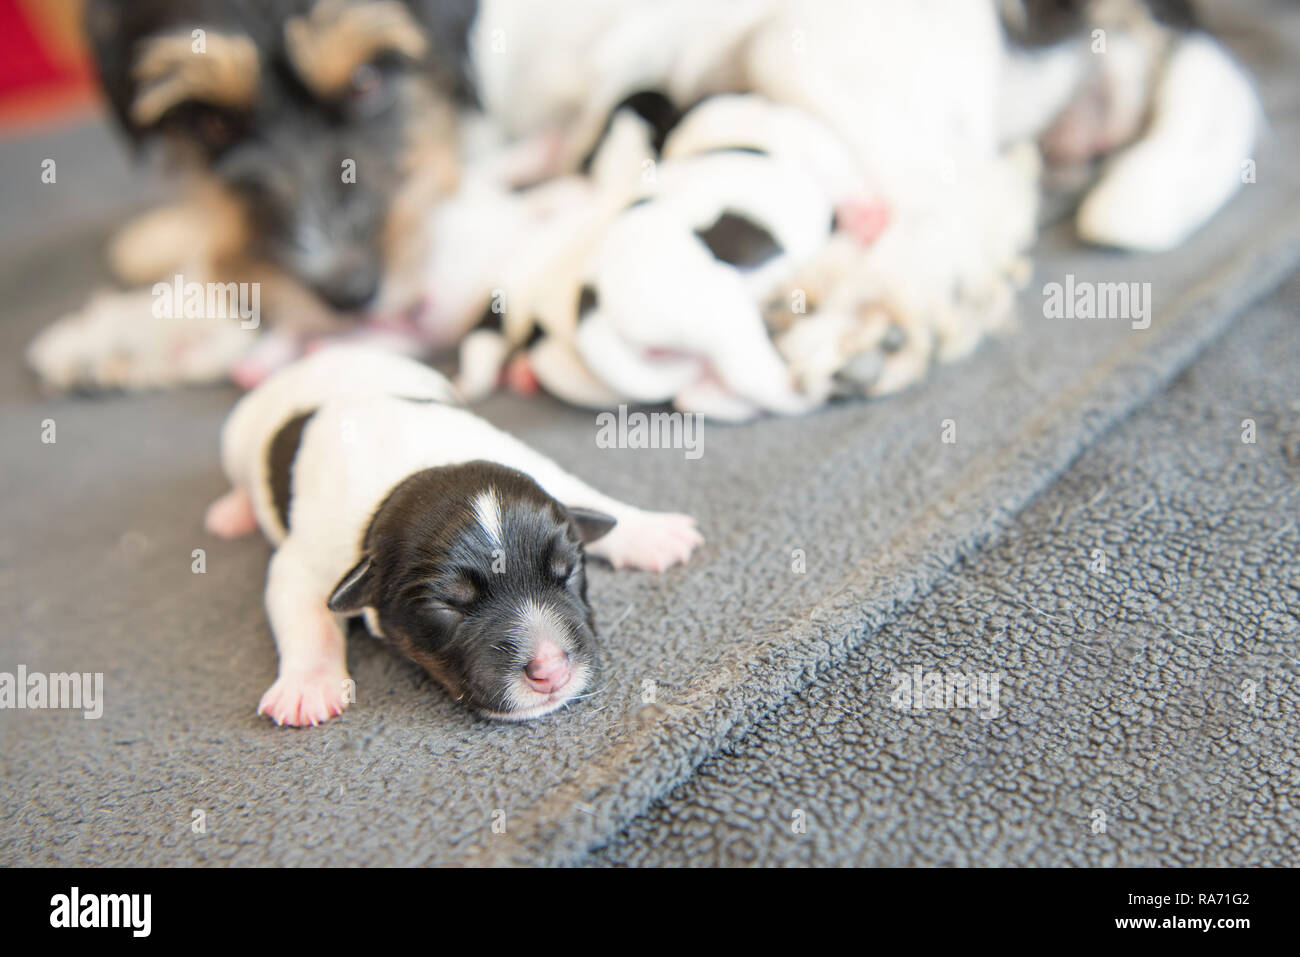 Neugeborene hund Baby - einen Tag alt - Jack Russell Terrier Welpen vor dem  Wurf Stockfotografie - Alamy